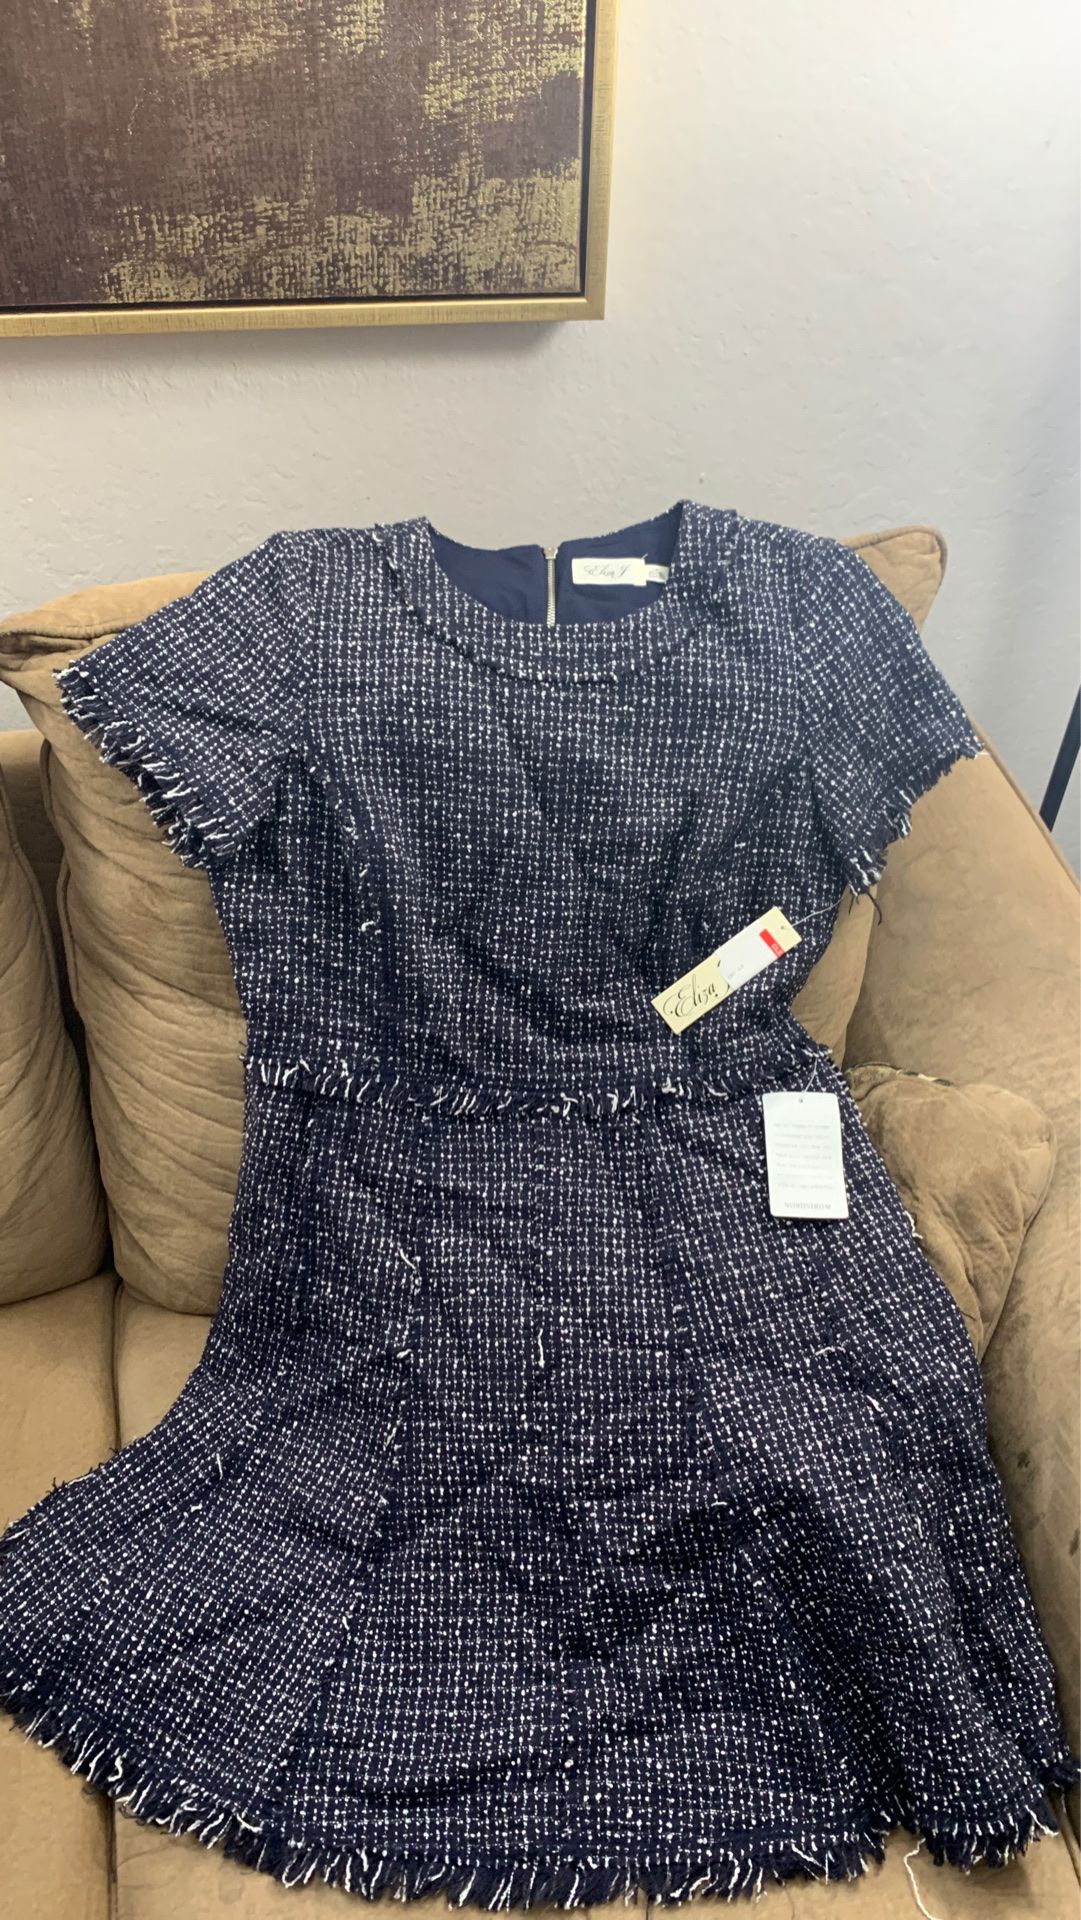 Women’s tweed navy blue dress